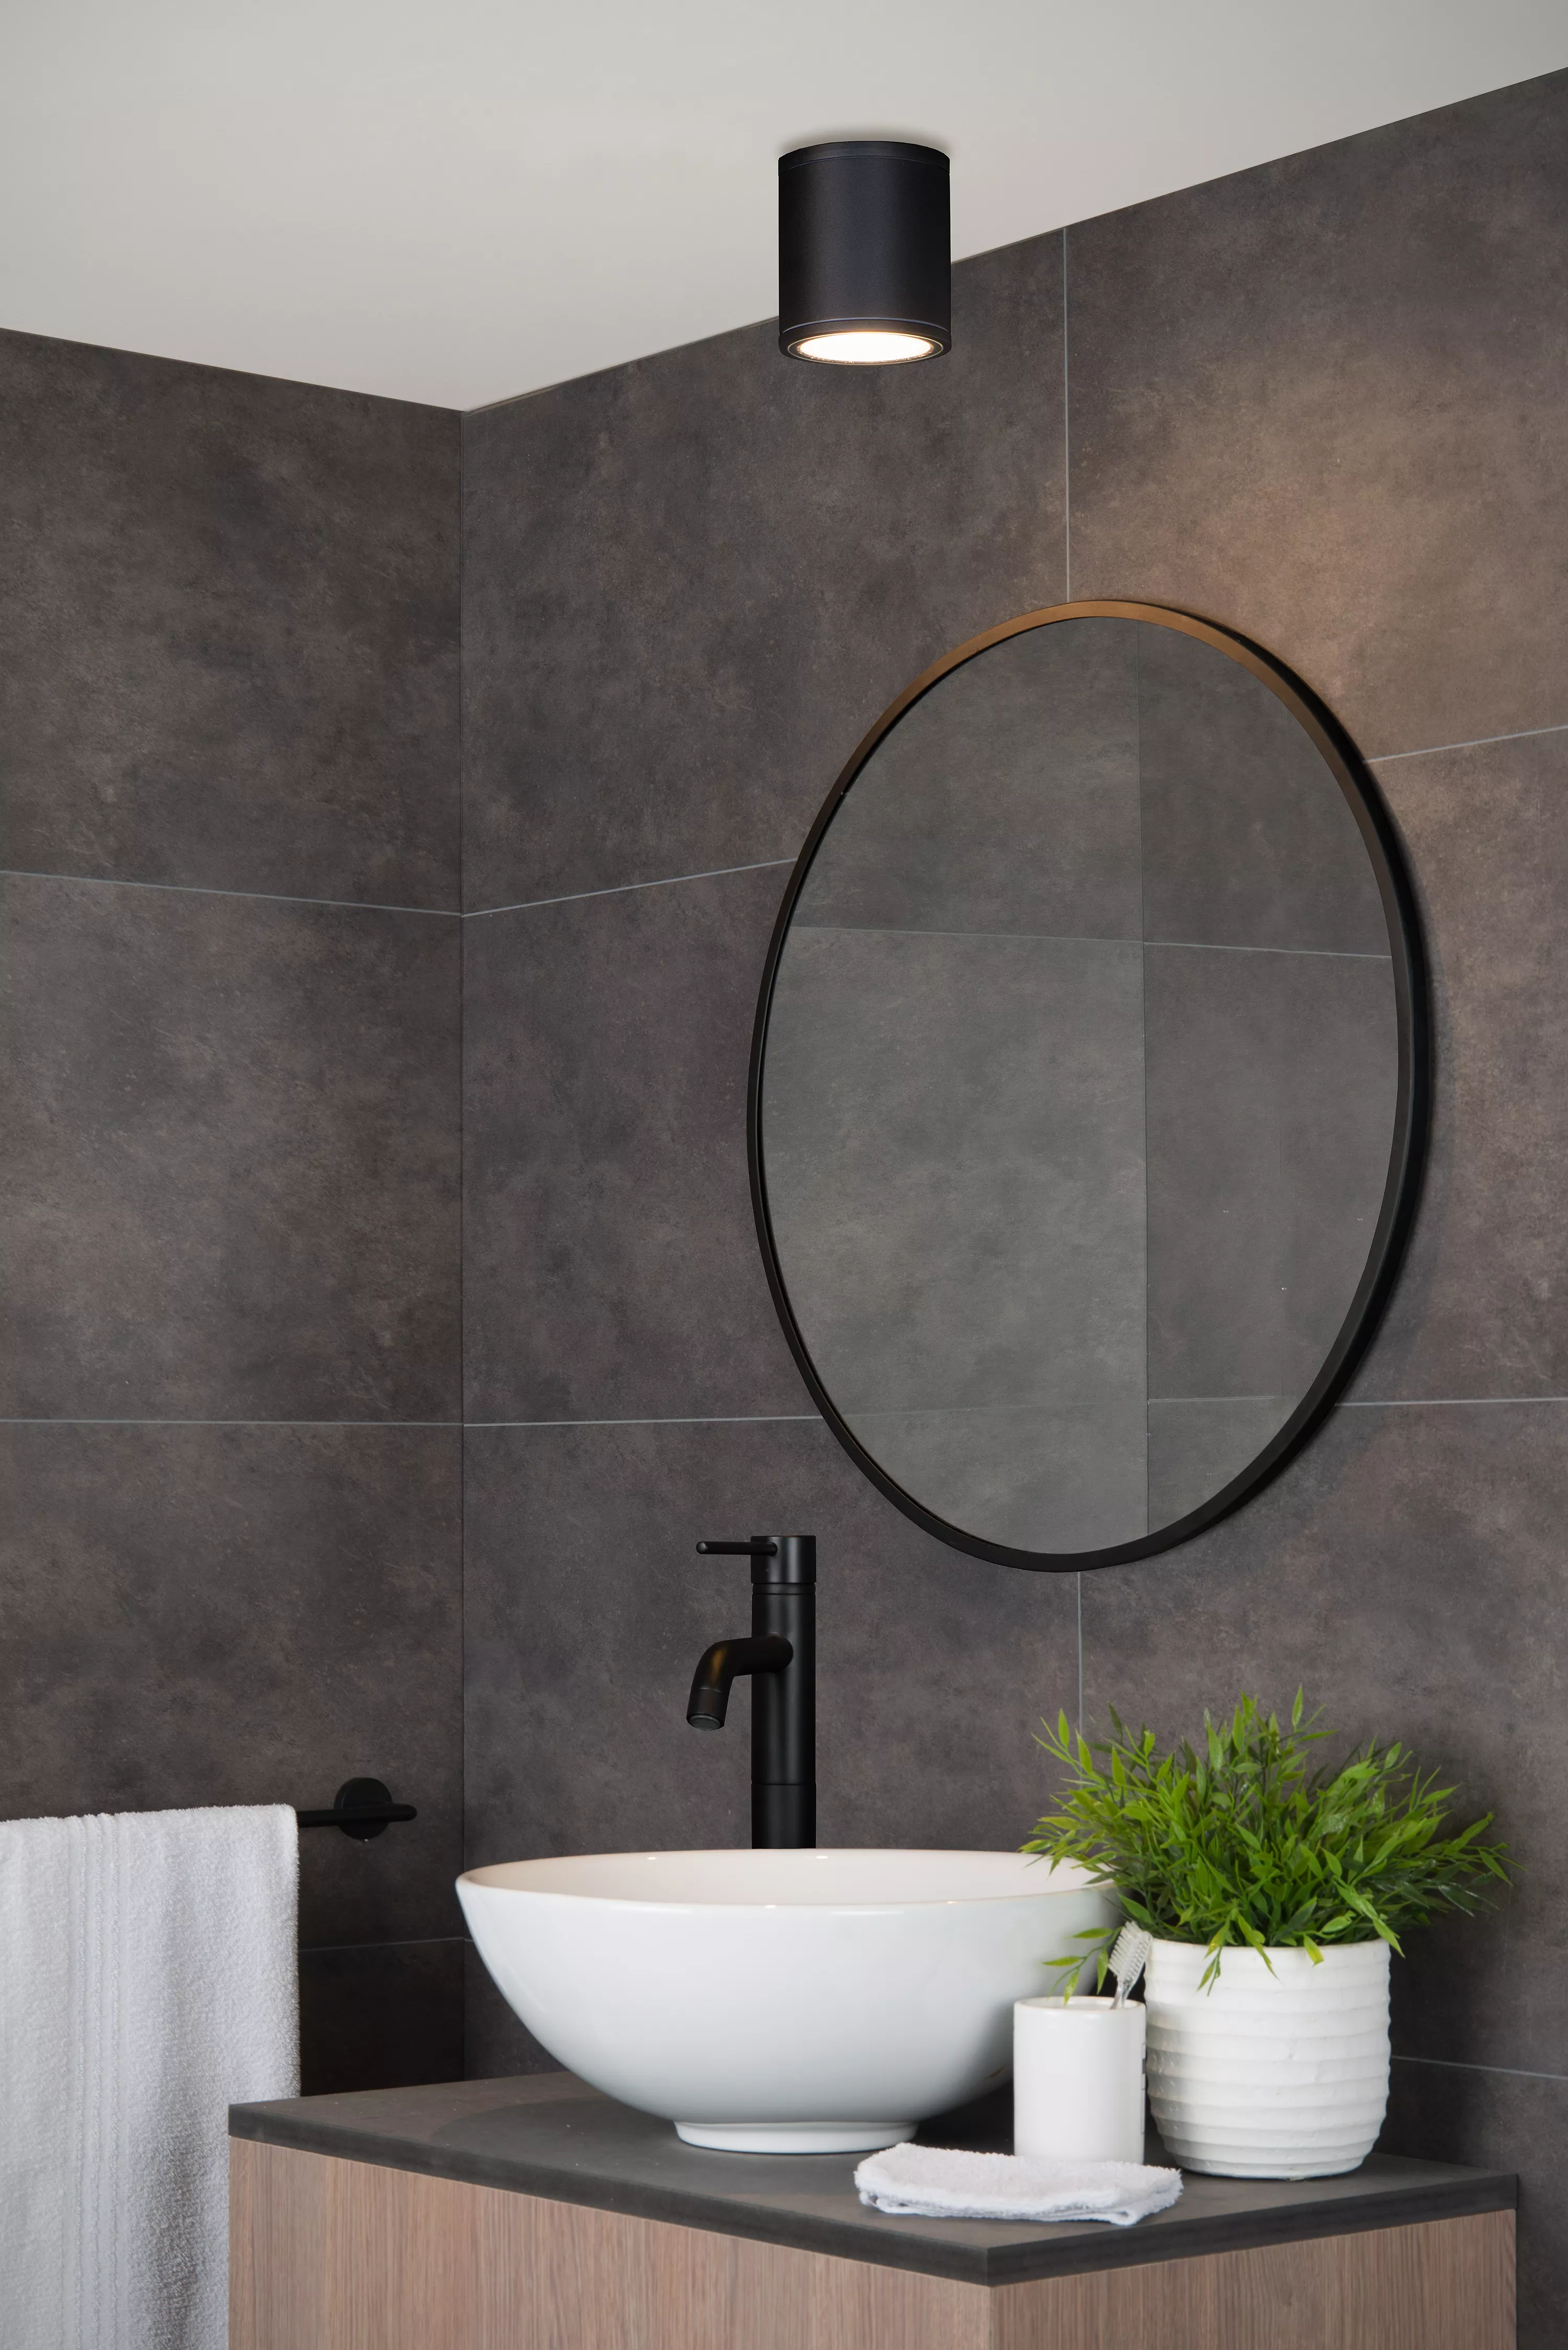 Jednoduché stropné bodové svetlo v čiernom a bielom vyhotovení, ktoré sa skvele hodí do kúpeľne vďaka vysokému krytiu.